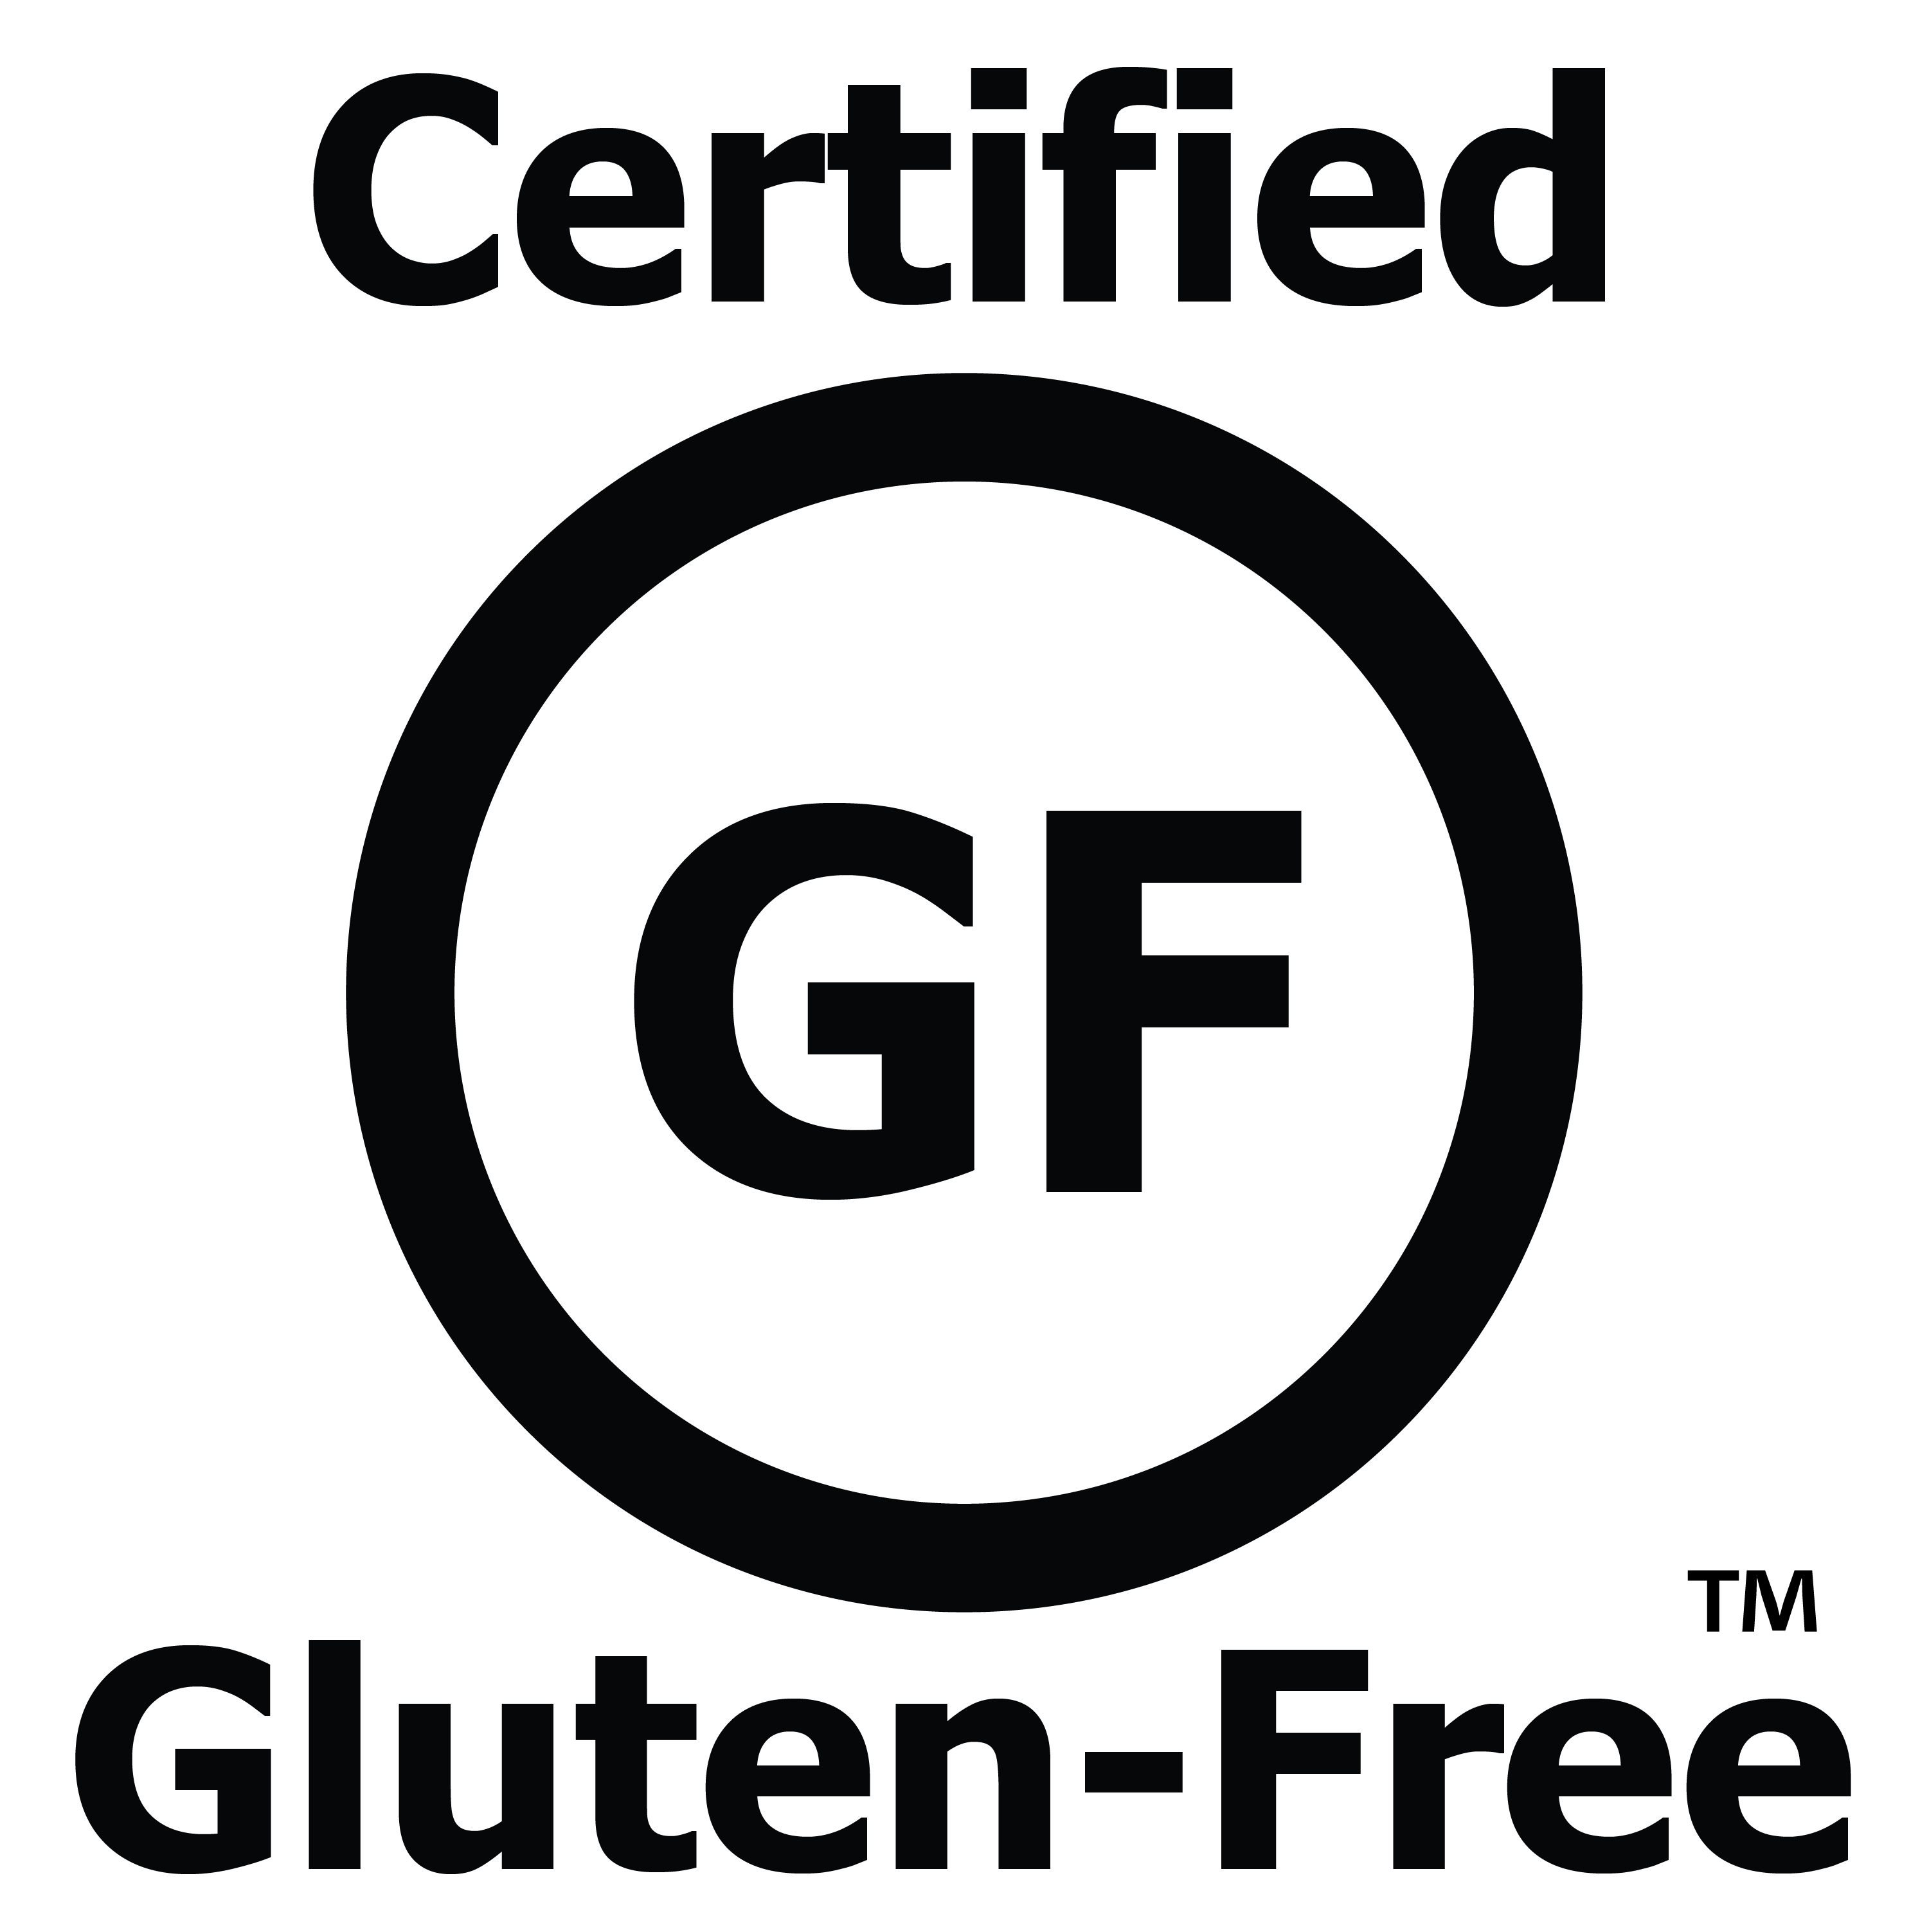 certified gluten-free